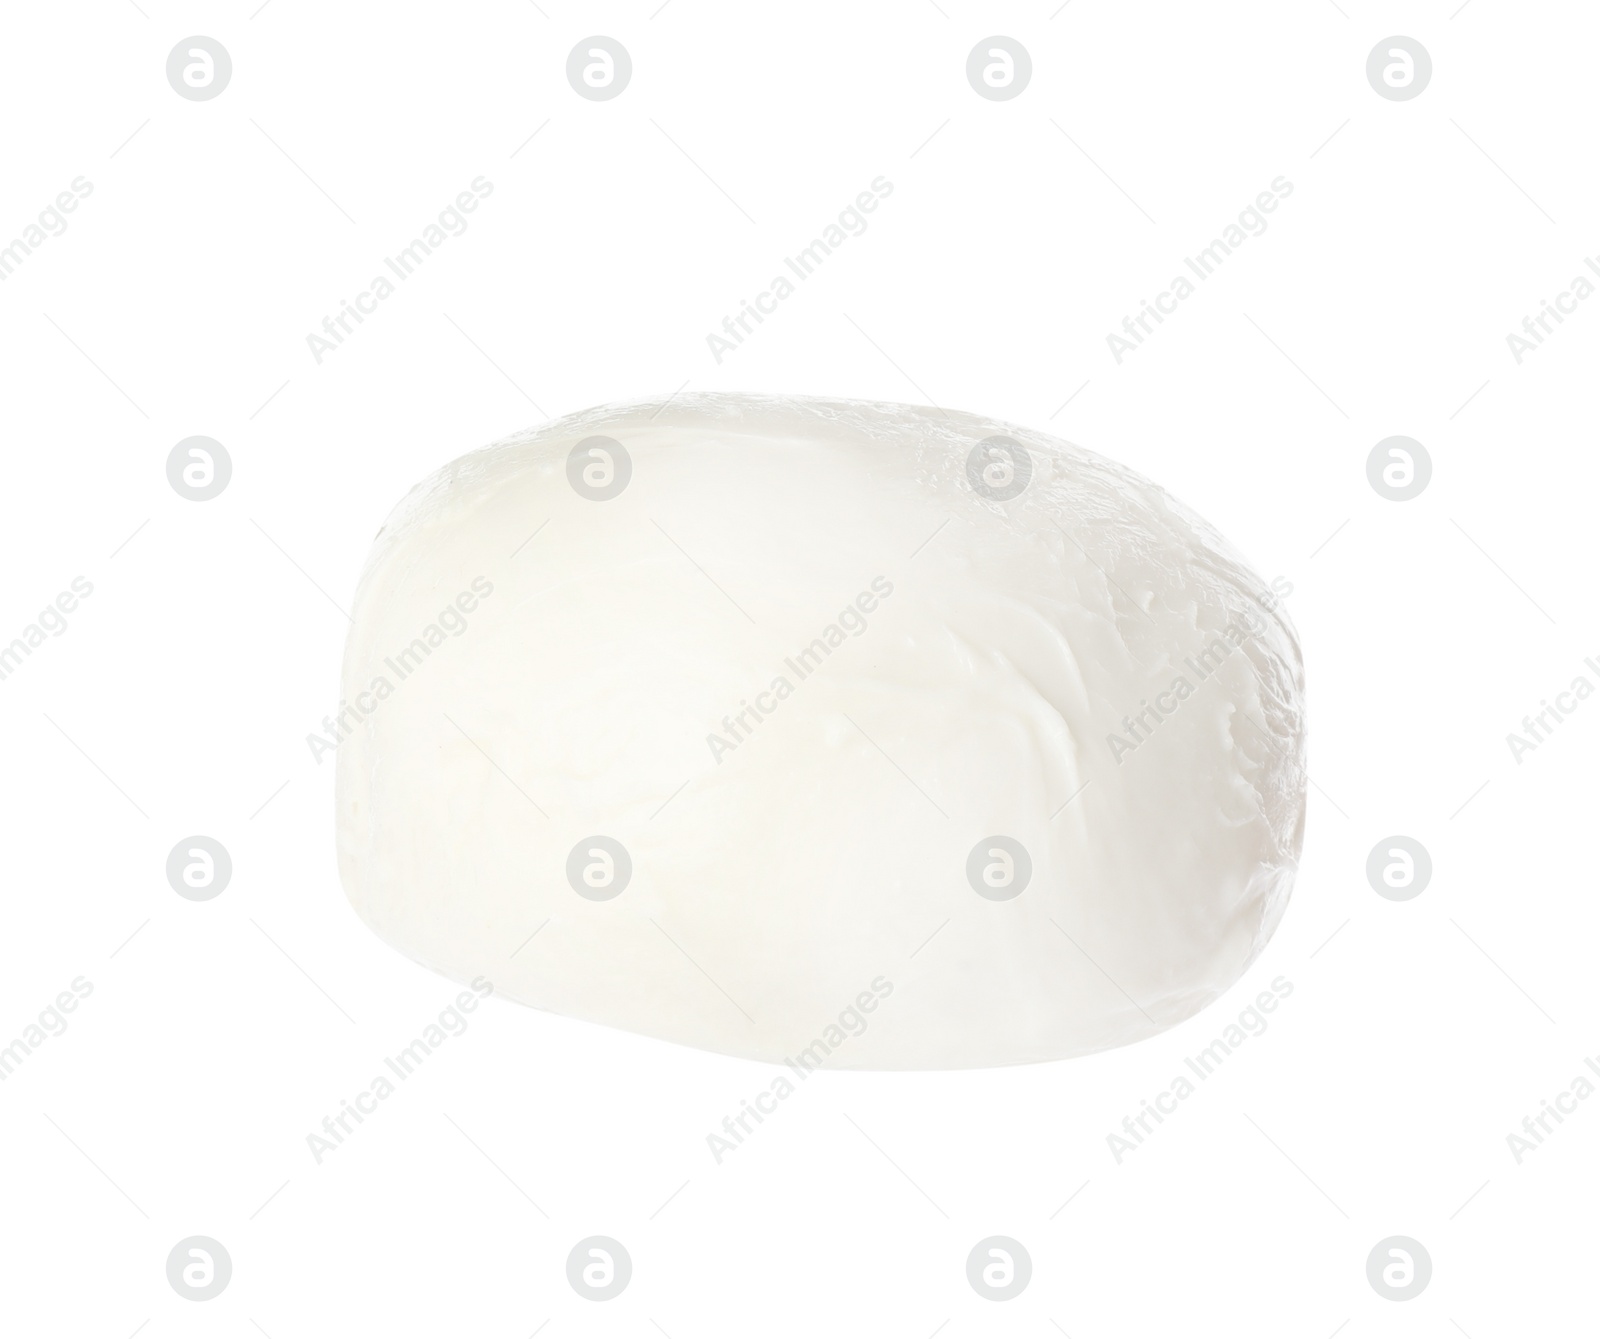 Photo of Delicious mozzarella cheese ball on white background